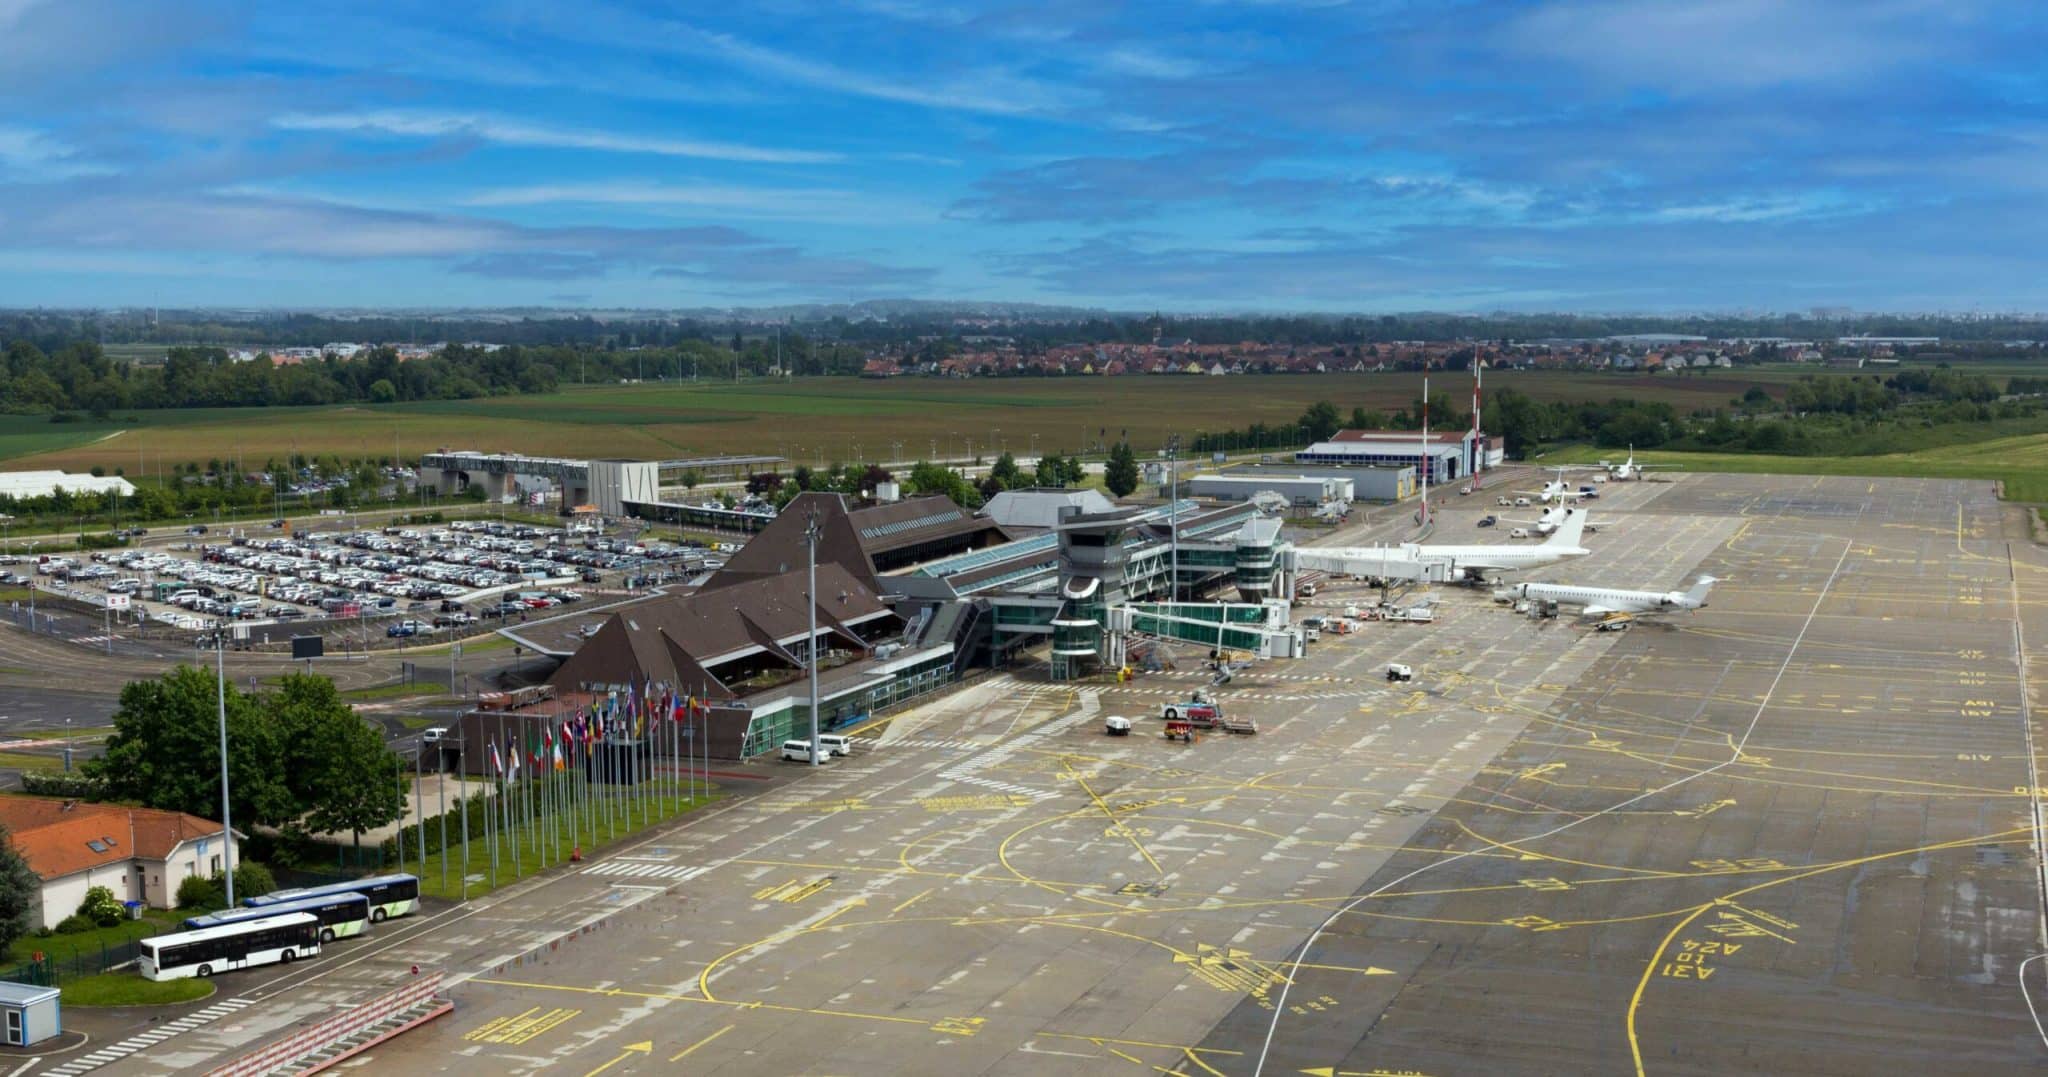 L'aeroporto di Strasburgo è stato chiuso dal 14 marzo al 14 aprile per lavori di ristrutturazione della pista